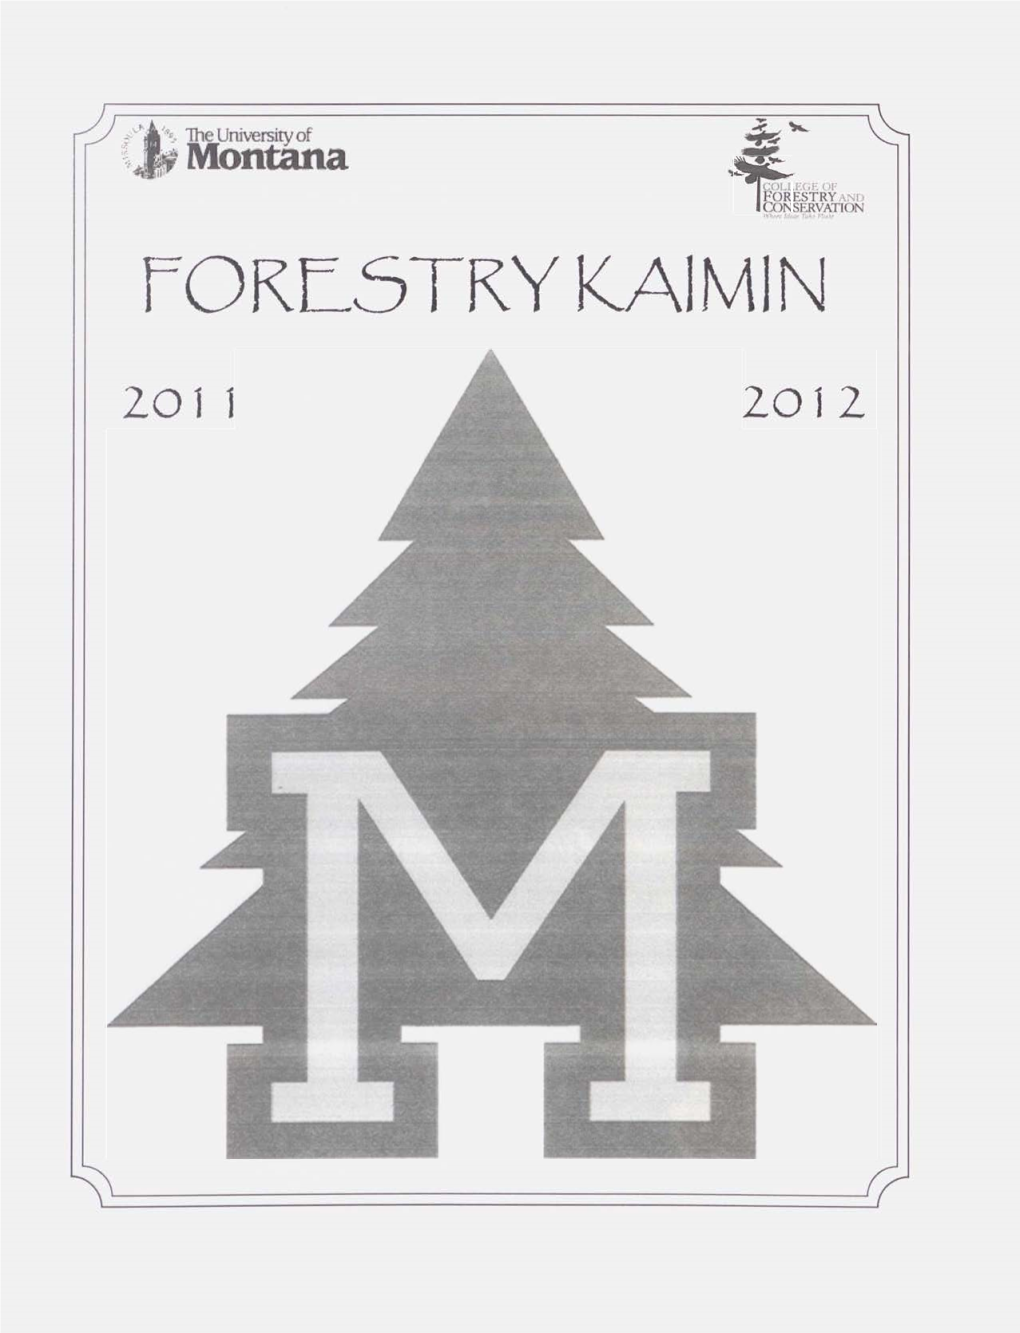 Forestry Kaimin, 2011-2012